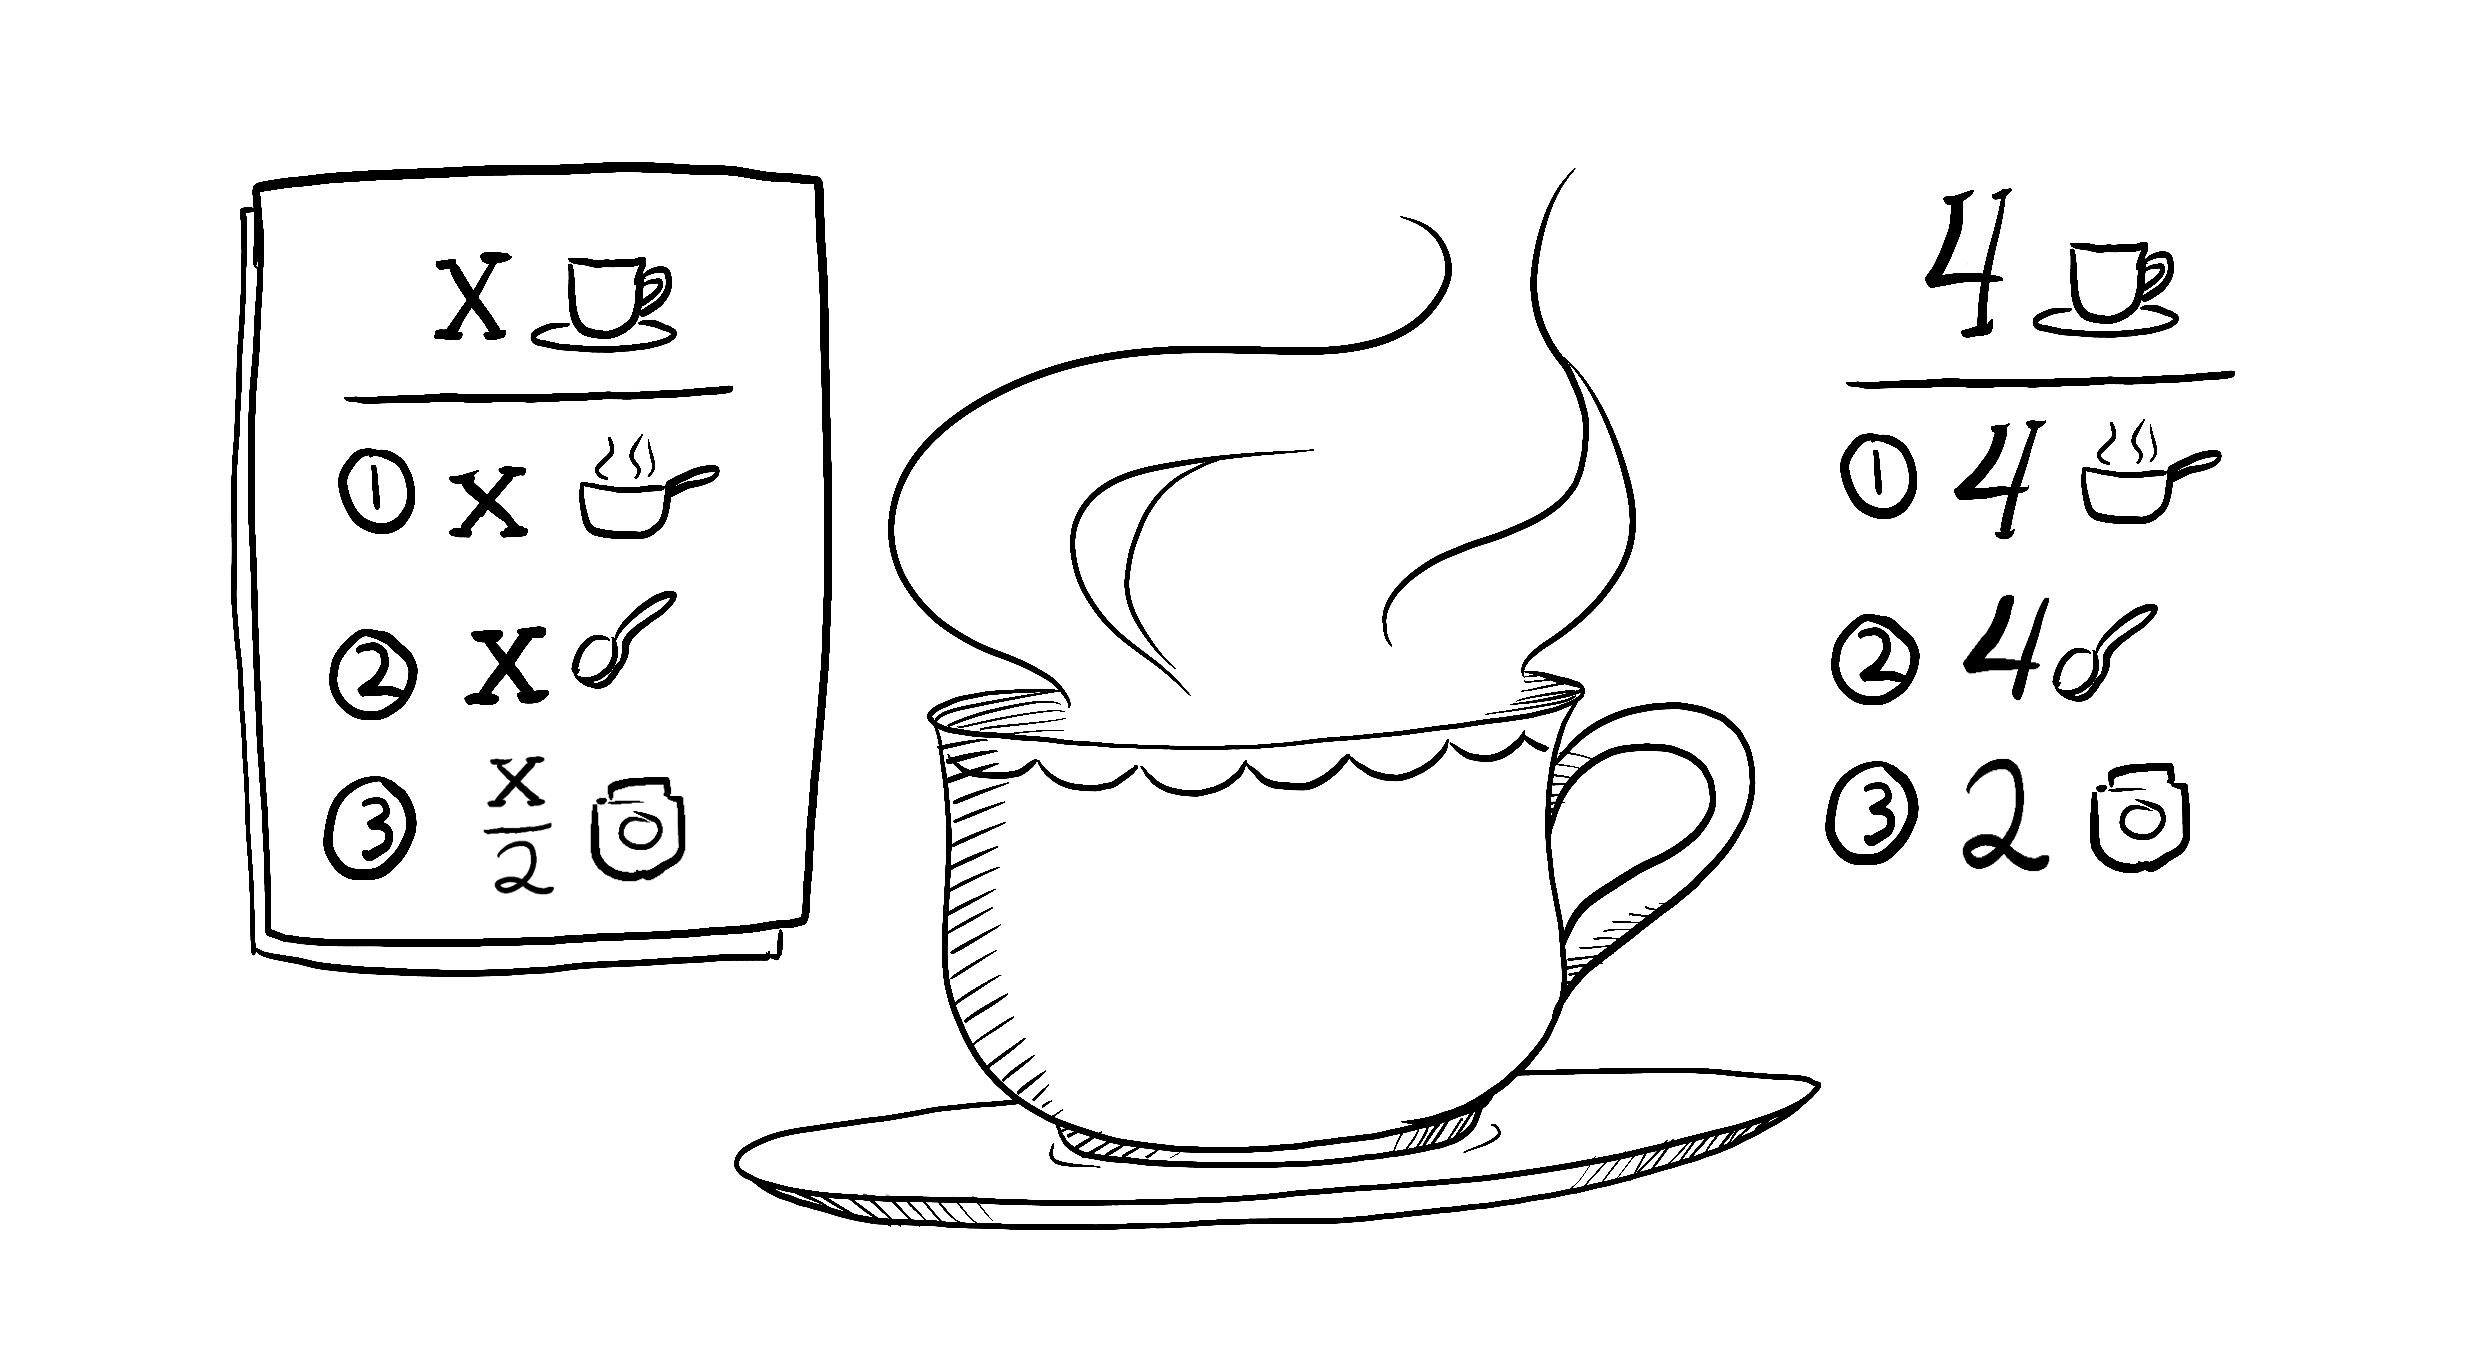 Una receta de té para x personas: toma x tazas de agua, añade x cucharadas de té y 0.5x cucharadas de especias y 0.5x tazas de leche